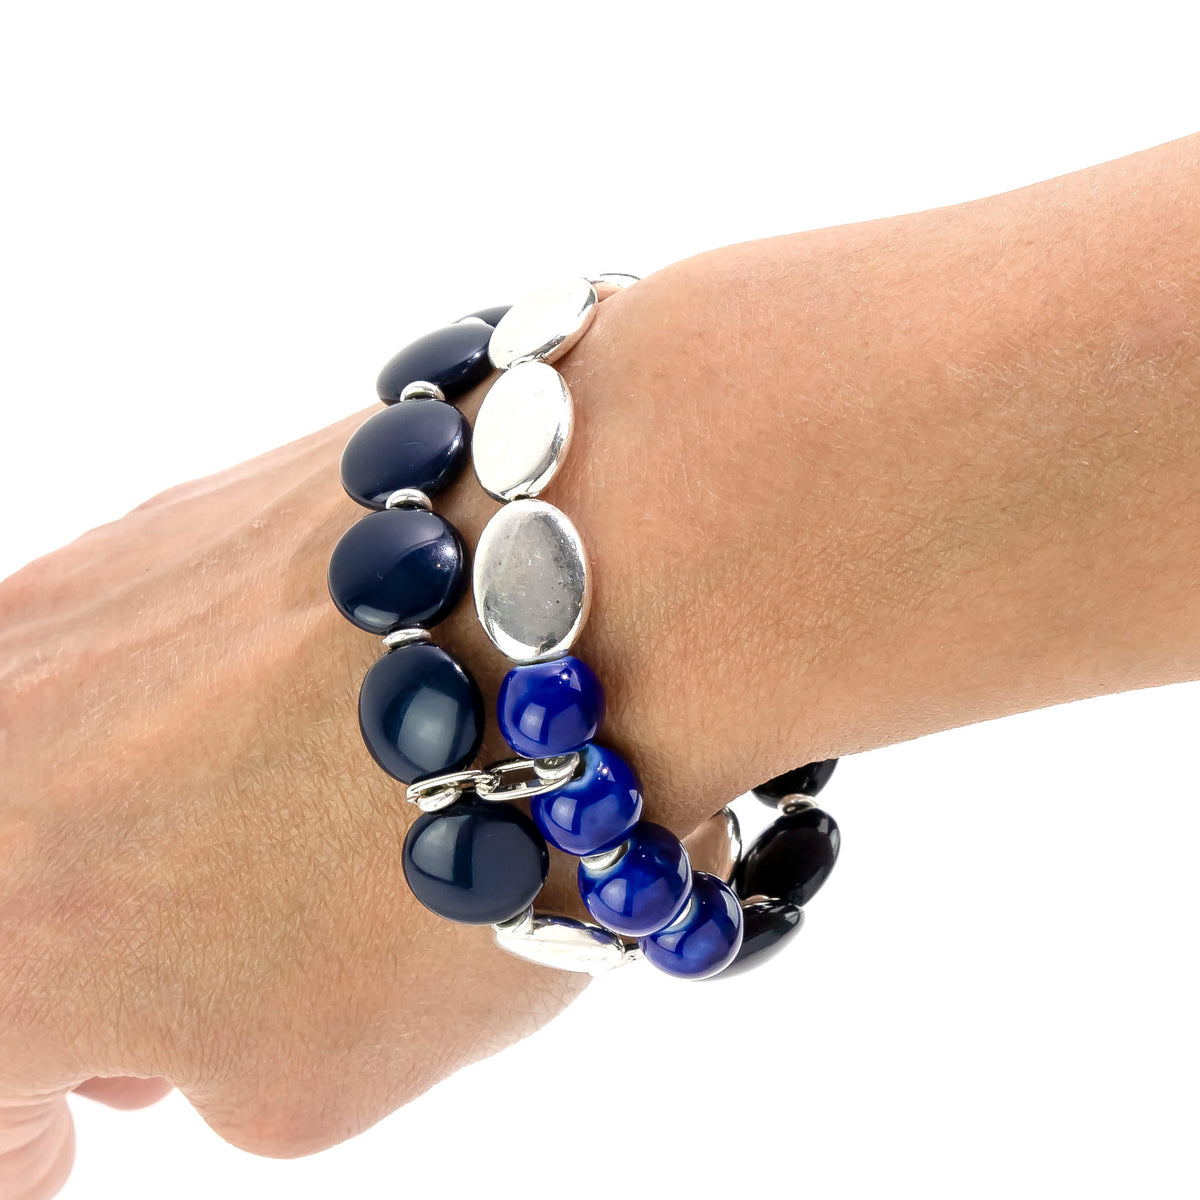 Ruby Rd. Blue 2-Row Silhouette Stretch Bracelet